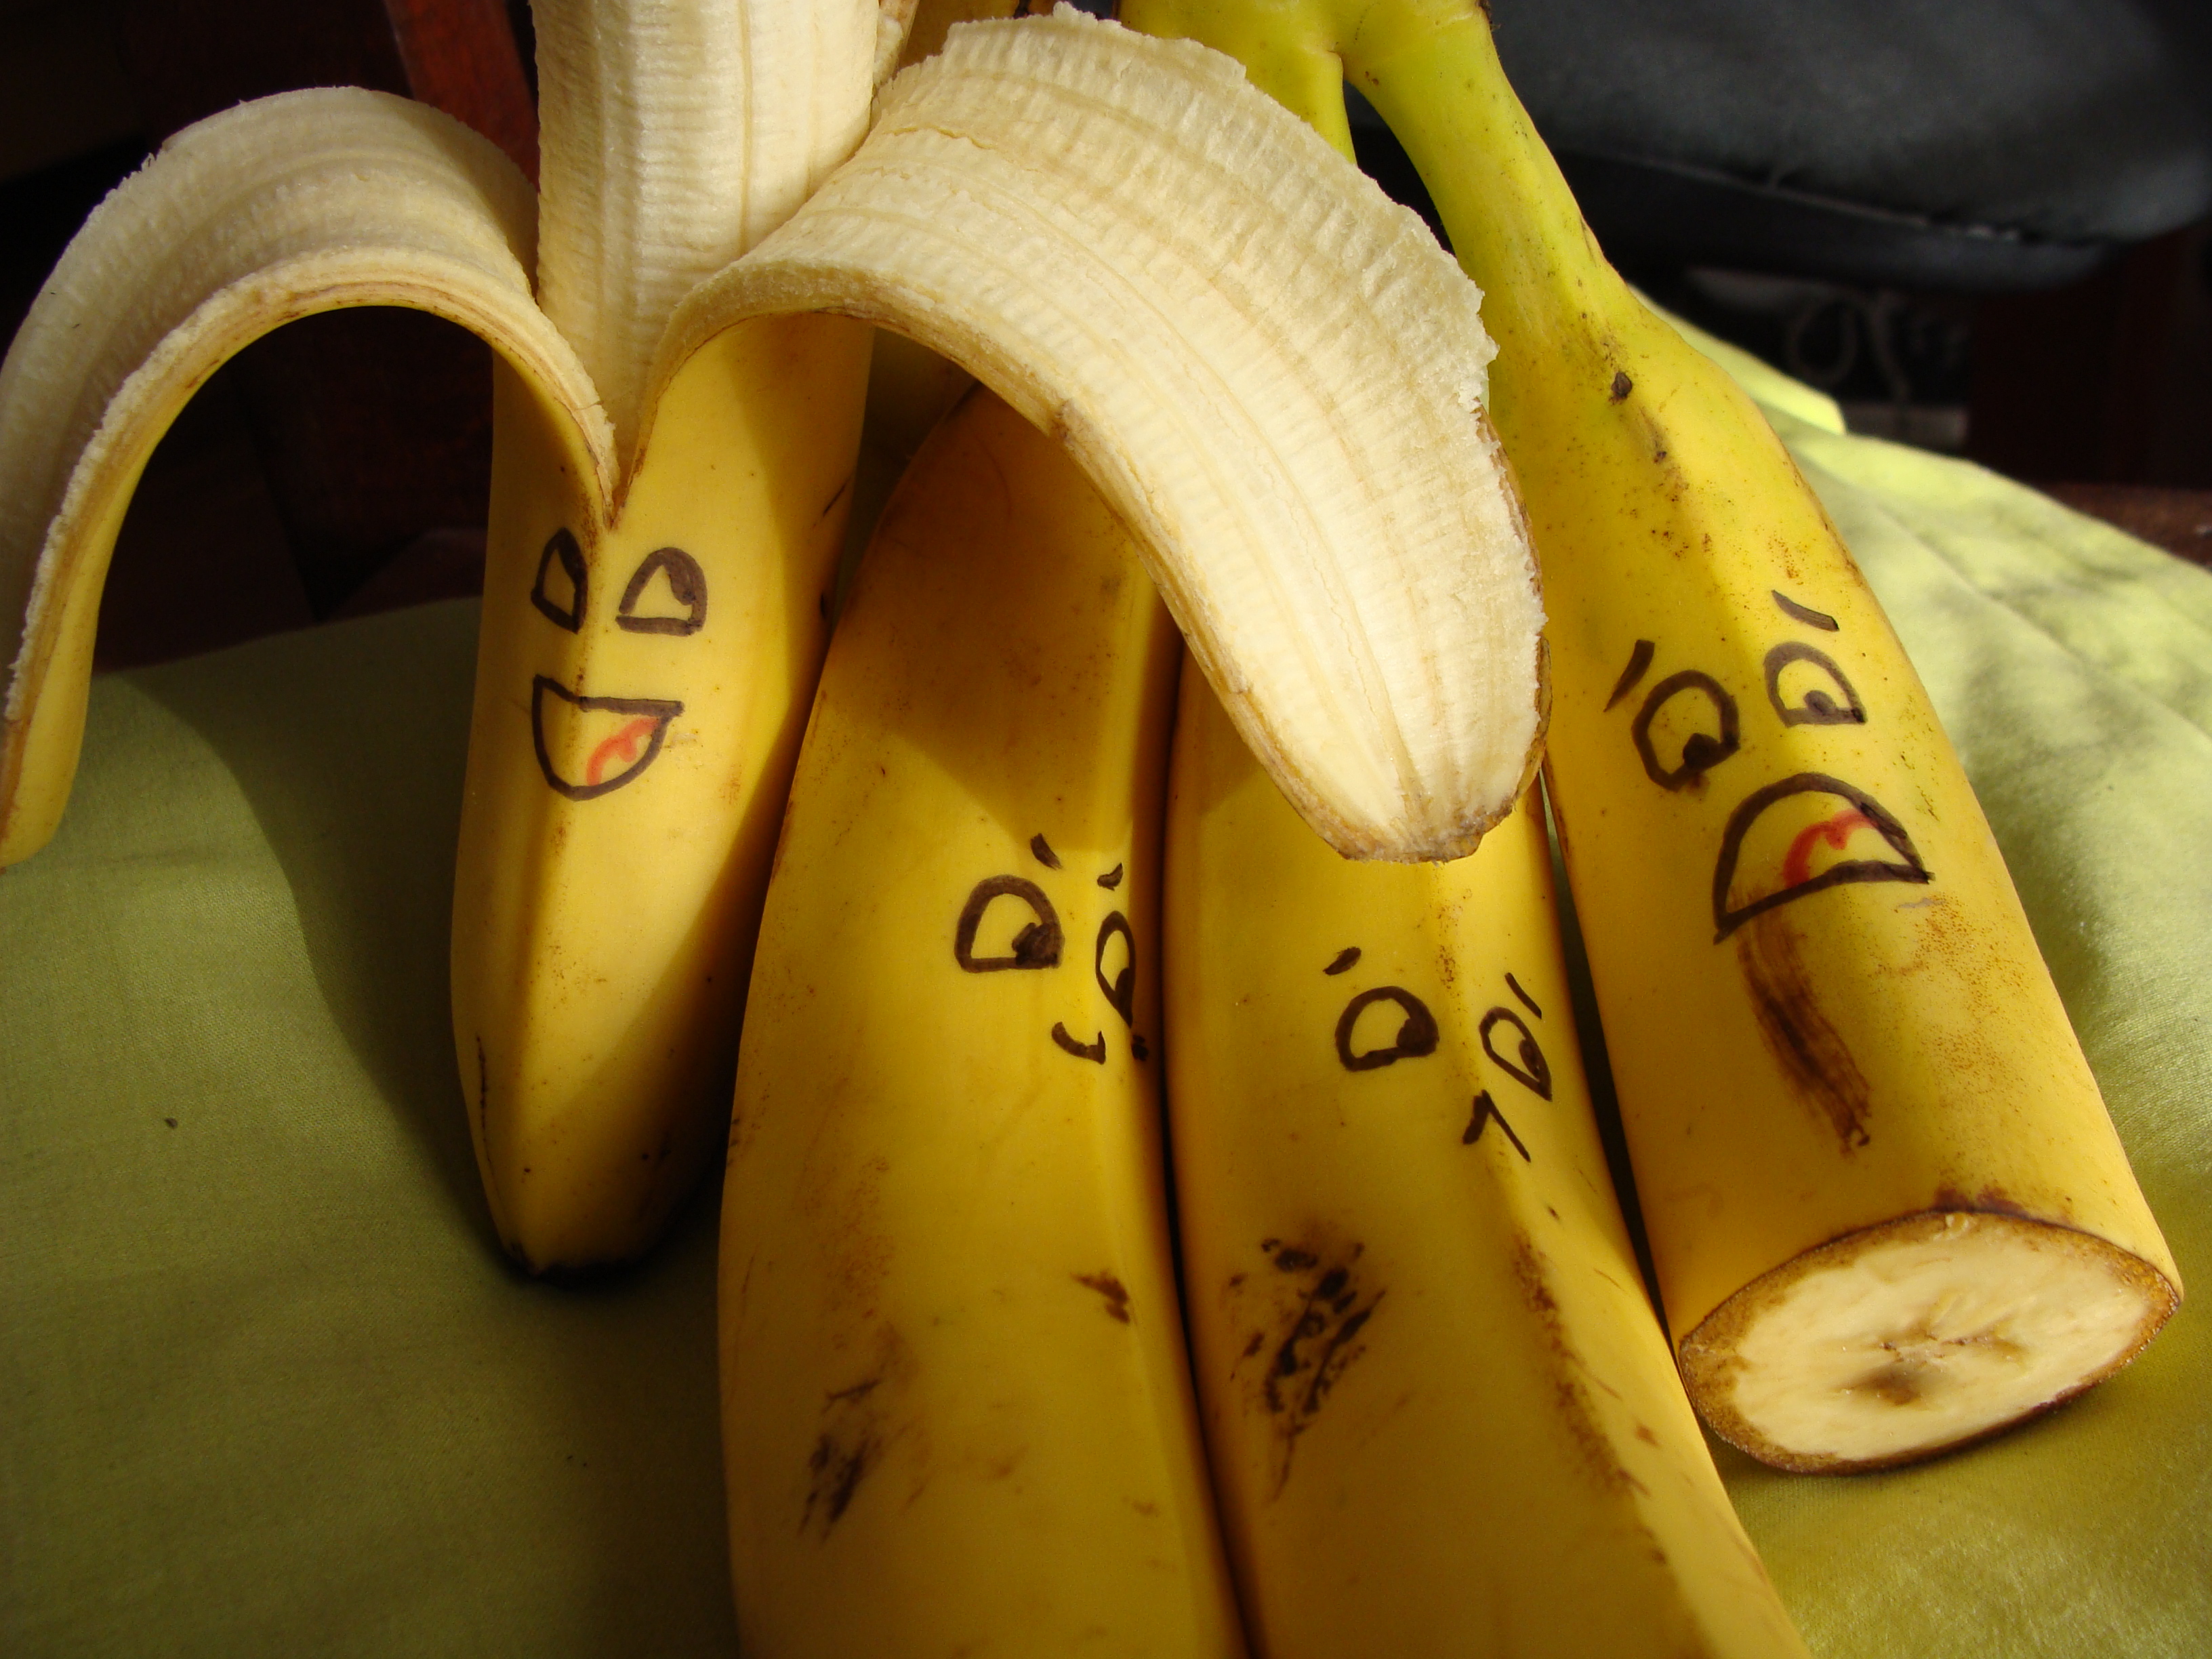  فوائد الموز للحالة النفسية